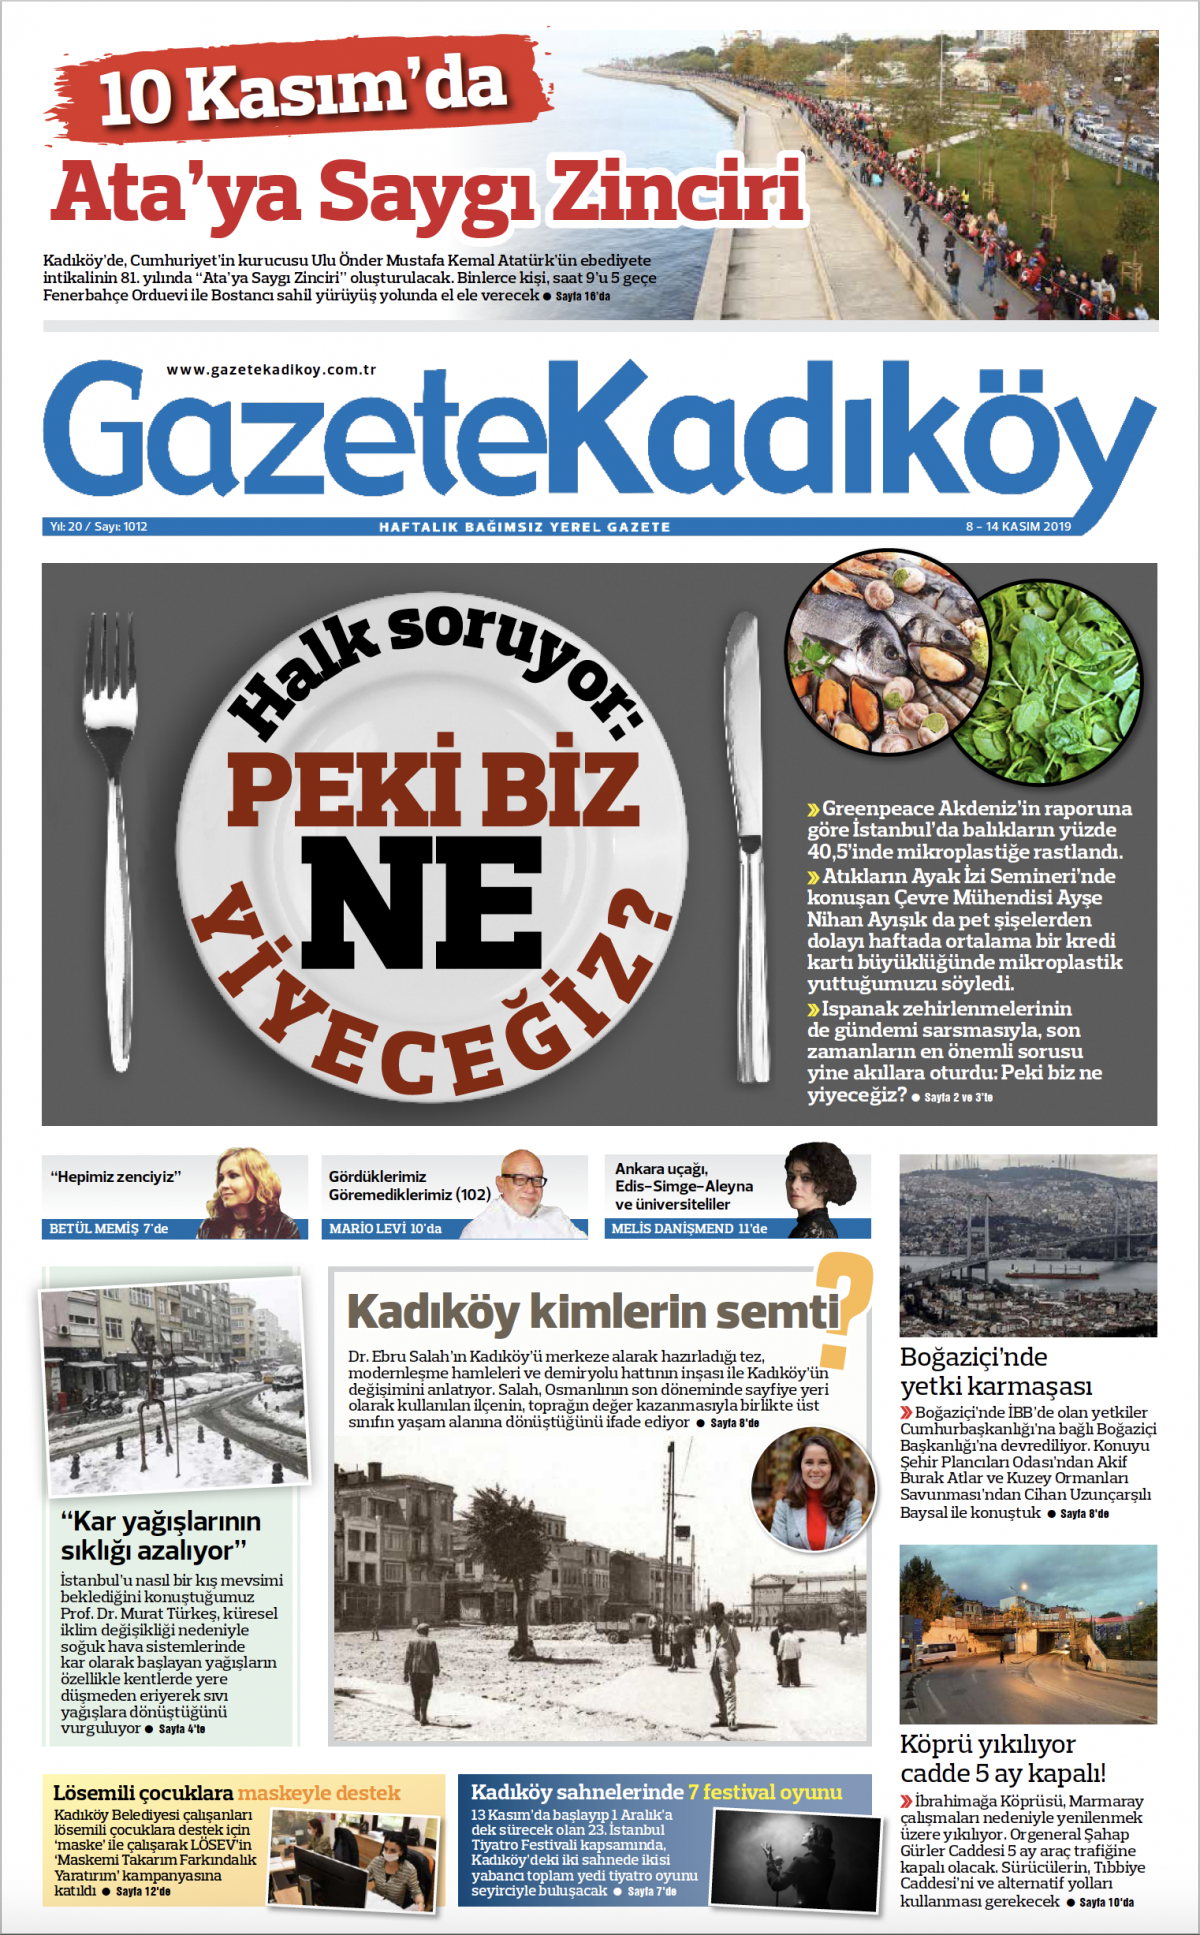 Gazete Kadıköy - 1012. Sayı